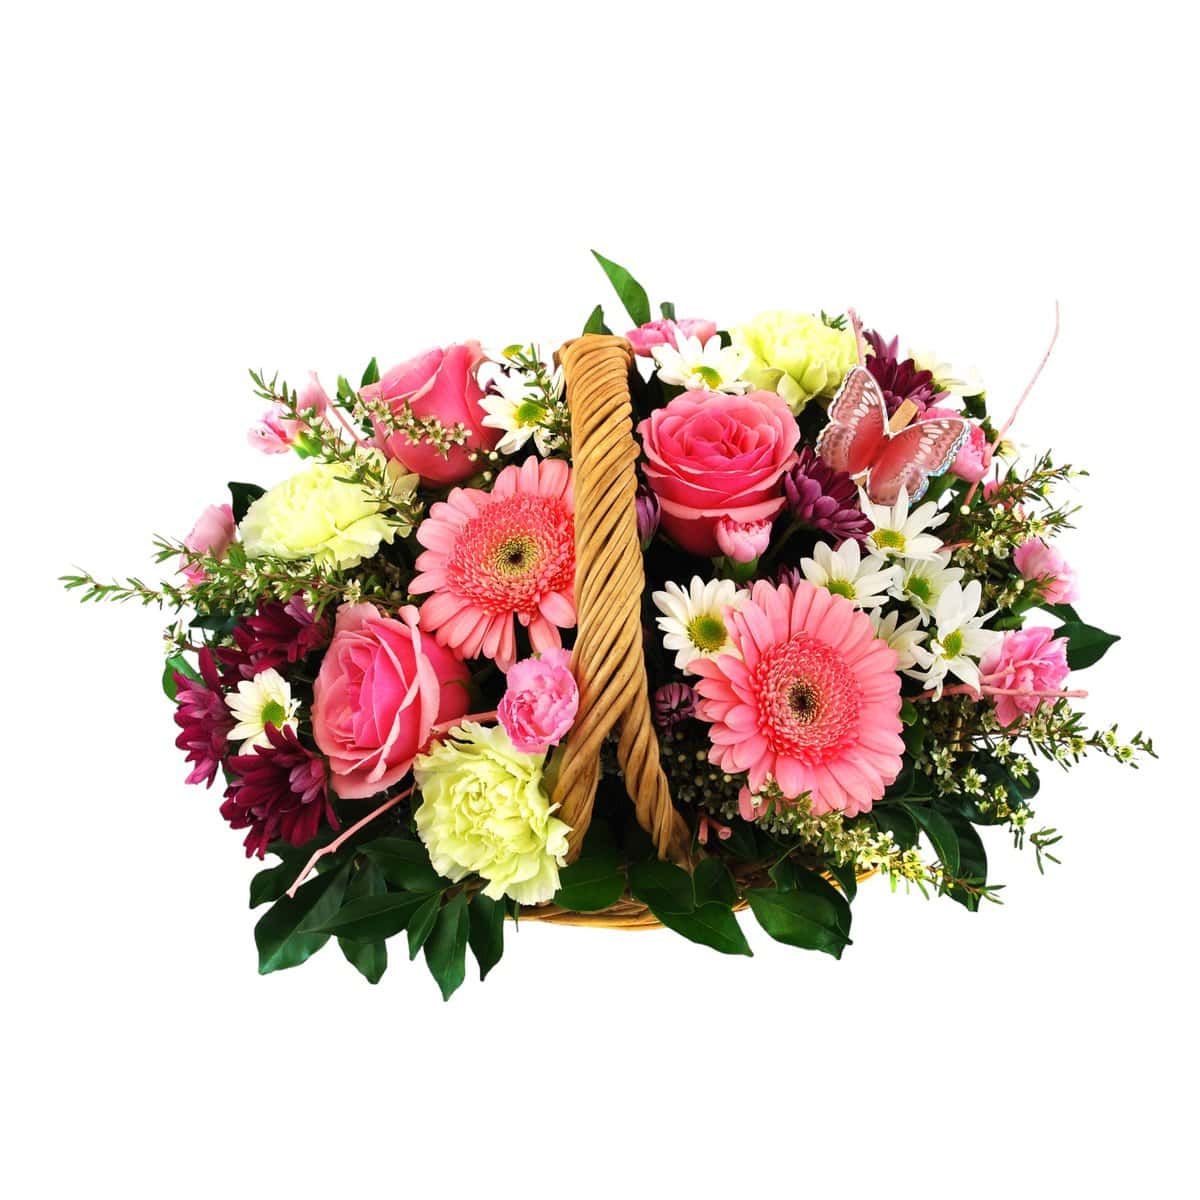 Noosaville Flower Basket Arrangement